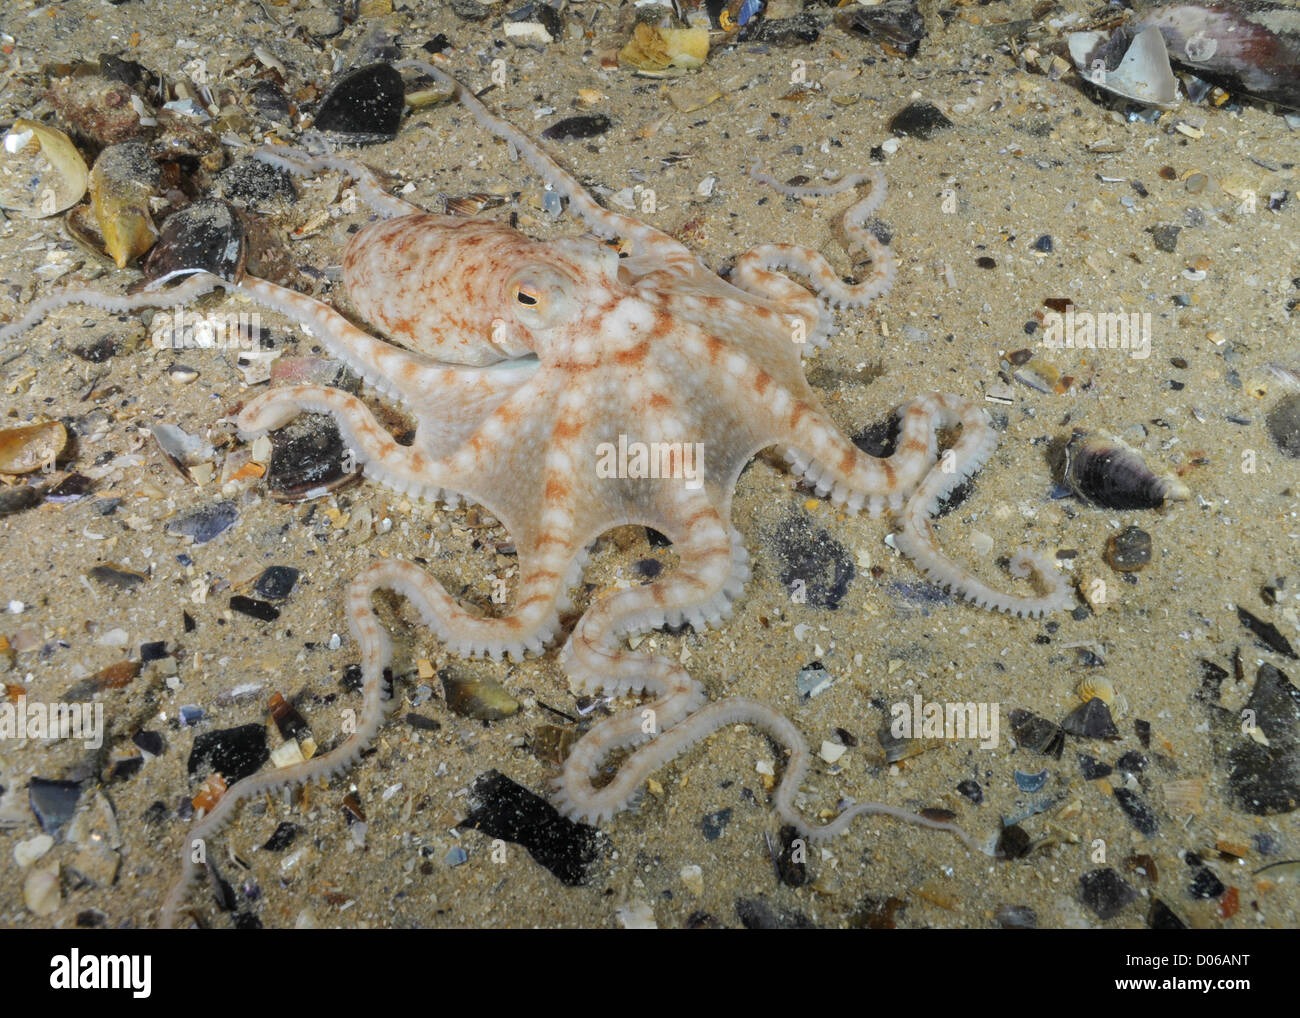 Double Spot Night Octopus. Stock Photo